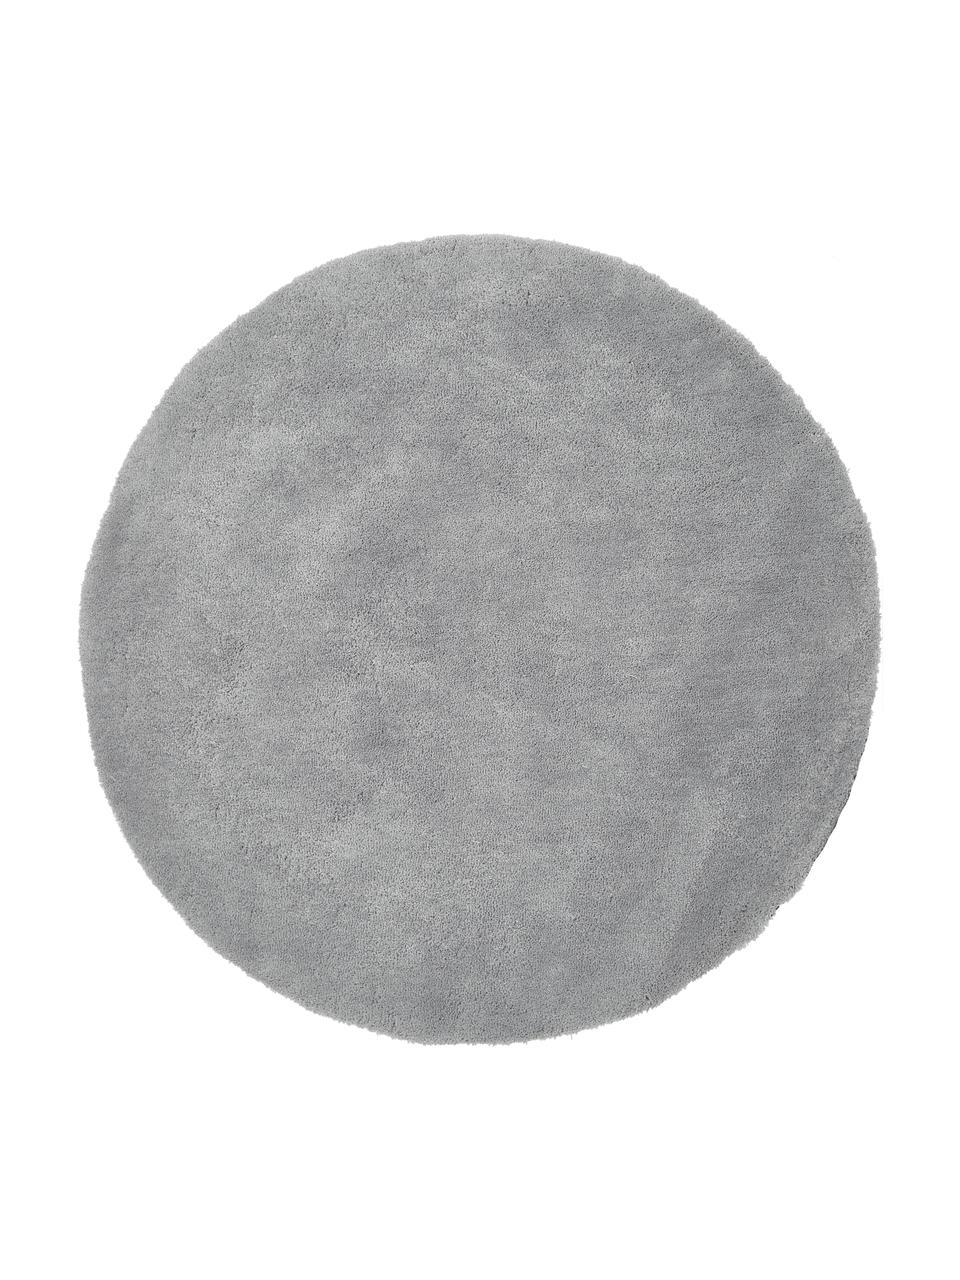 Tappeto rotondo morbido a pelo lungo grigio Leighton, Retro: 70% poliestere, 30% coton, Grigio, Ø 150 cm (taglia M)